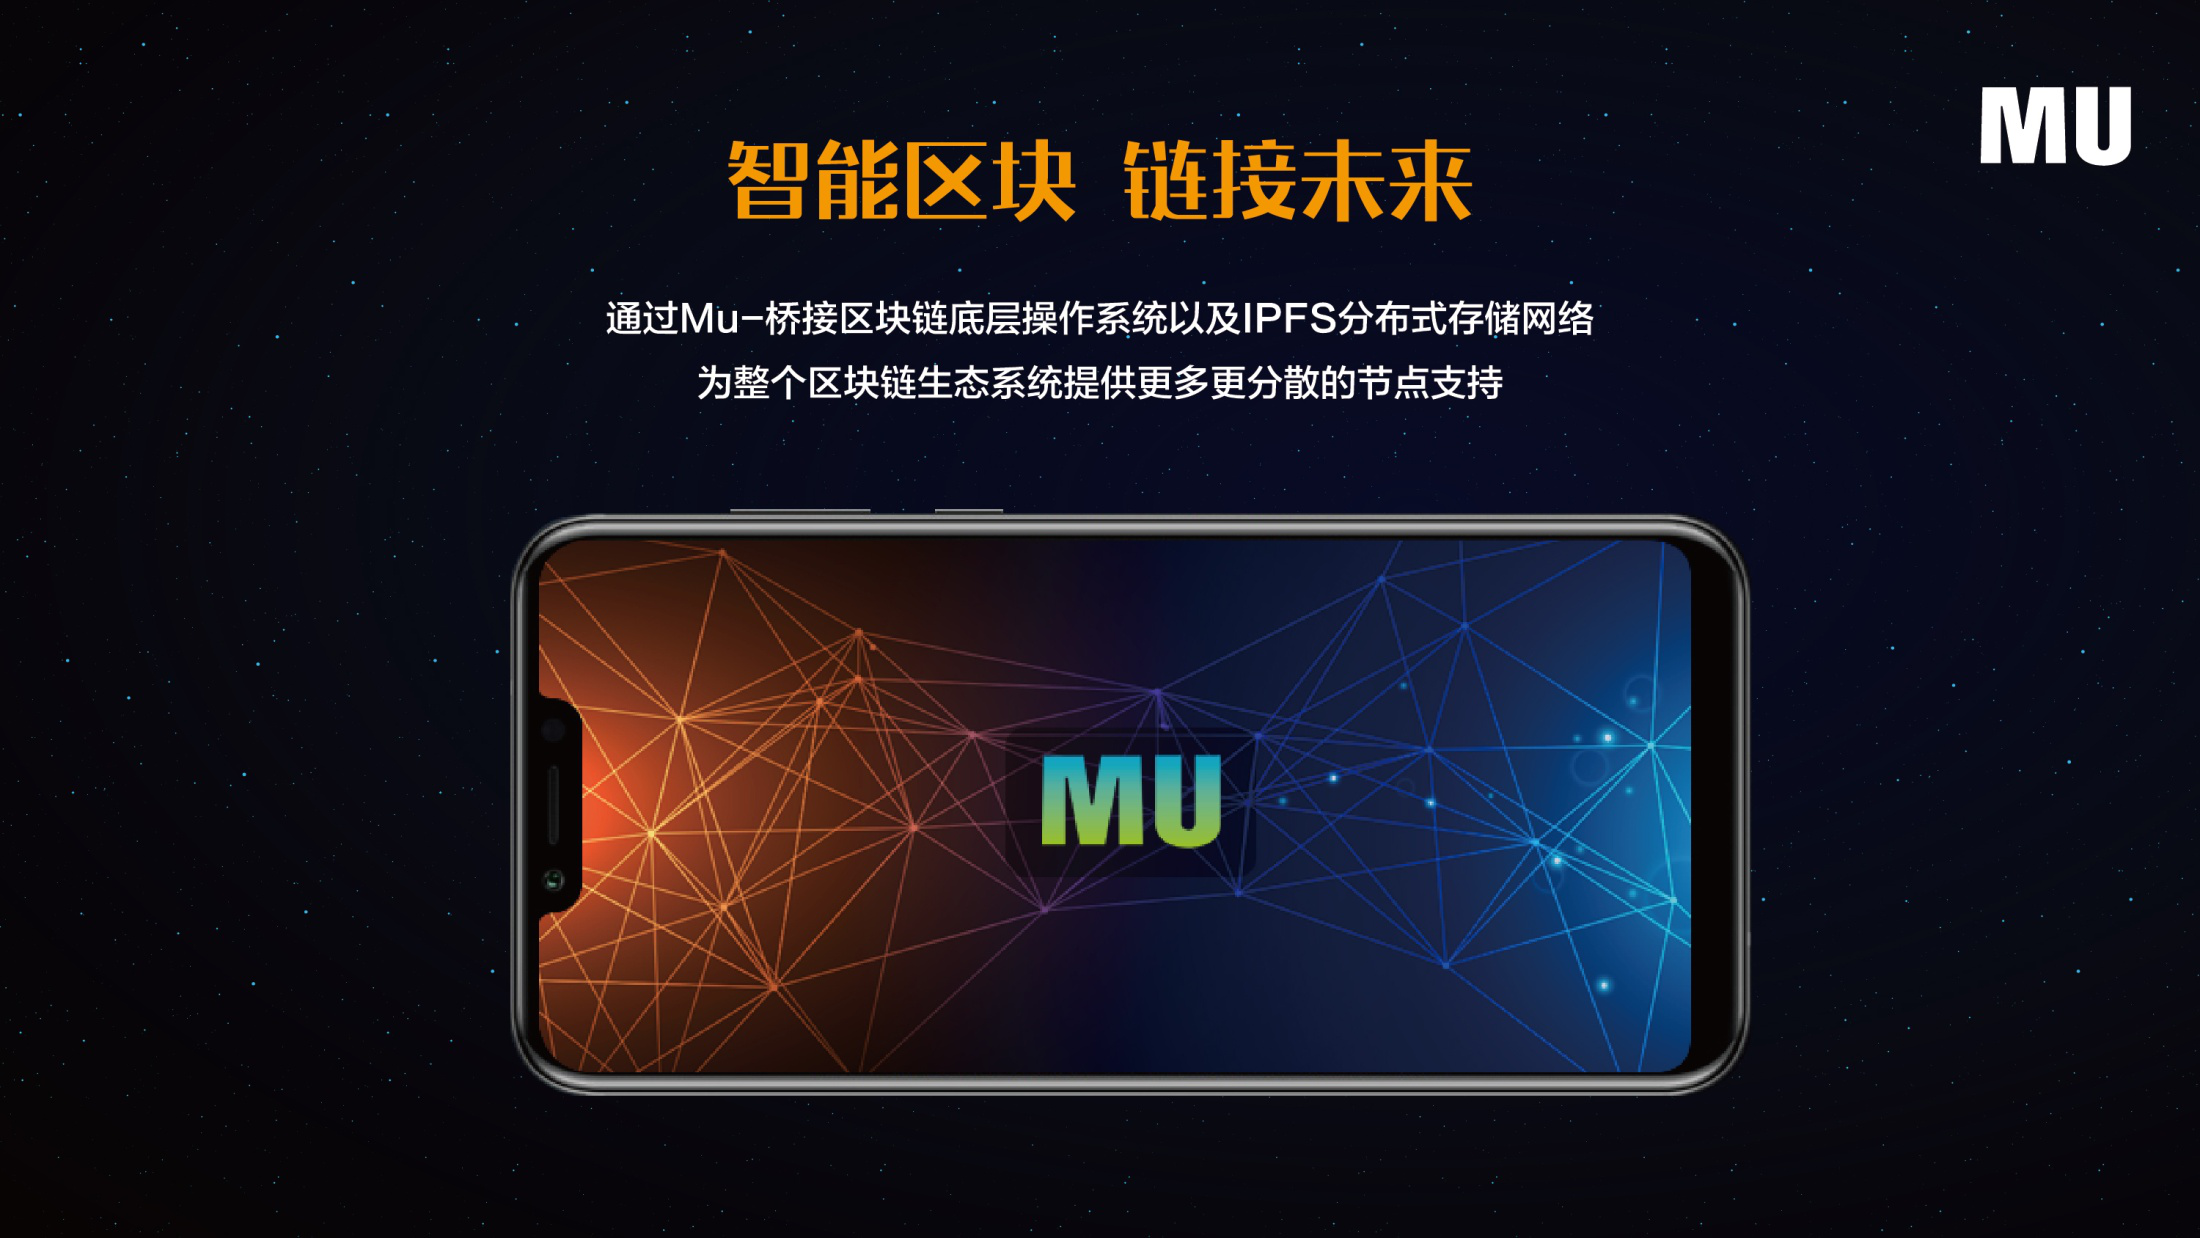 MU创世版区块链手机面市，引领区块链应用新风尚